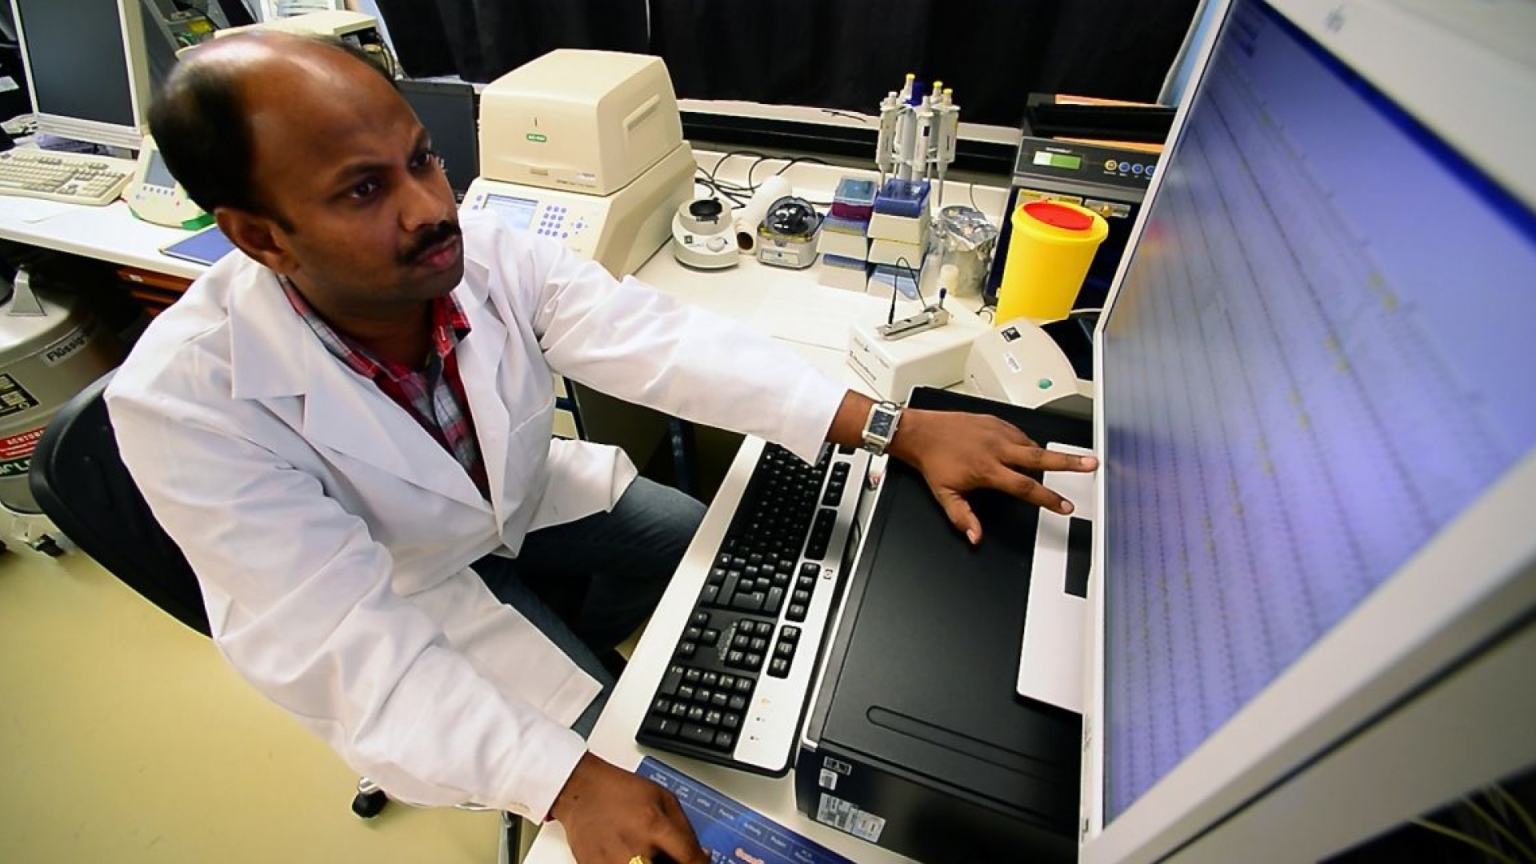 Die als RT-PCR bekannte nukleare Diagnosetechnik kann dabei helfen, das neuartige Coronavirus innerhalb von Stunden genau nachzuweisen und zu erkennen.